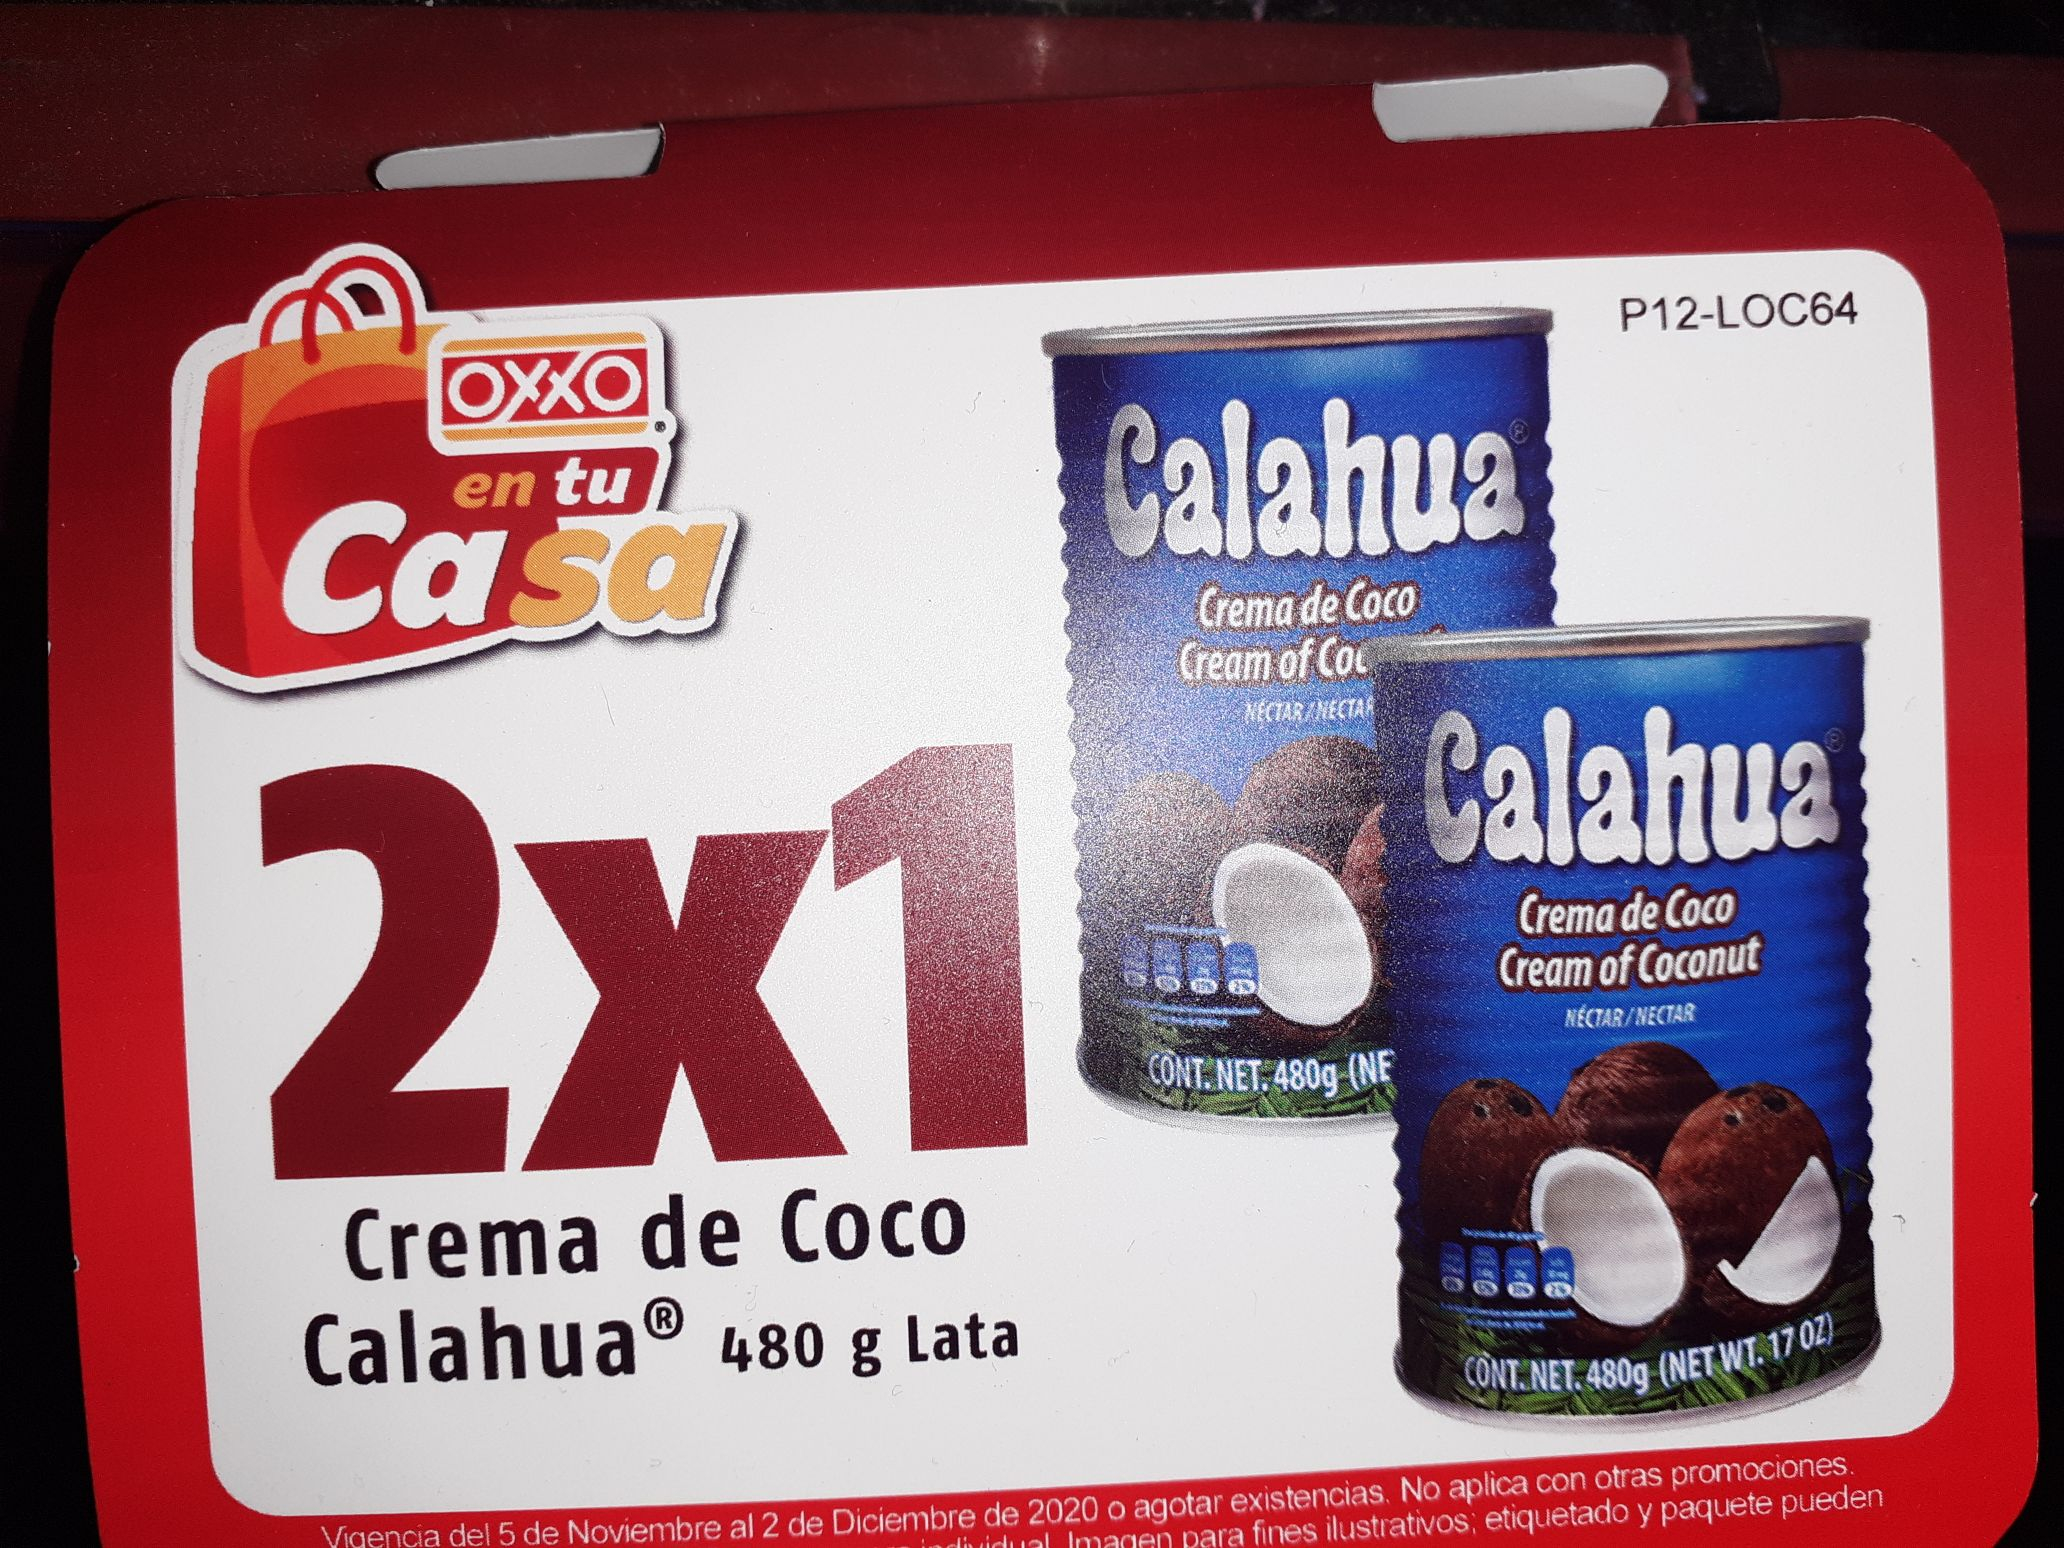 Oxxo Crema De Coco Calahua 2x1 Promodescuentos Com